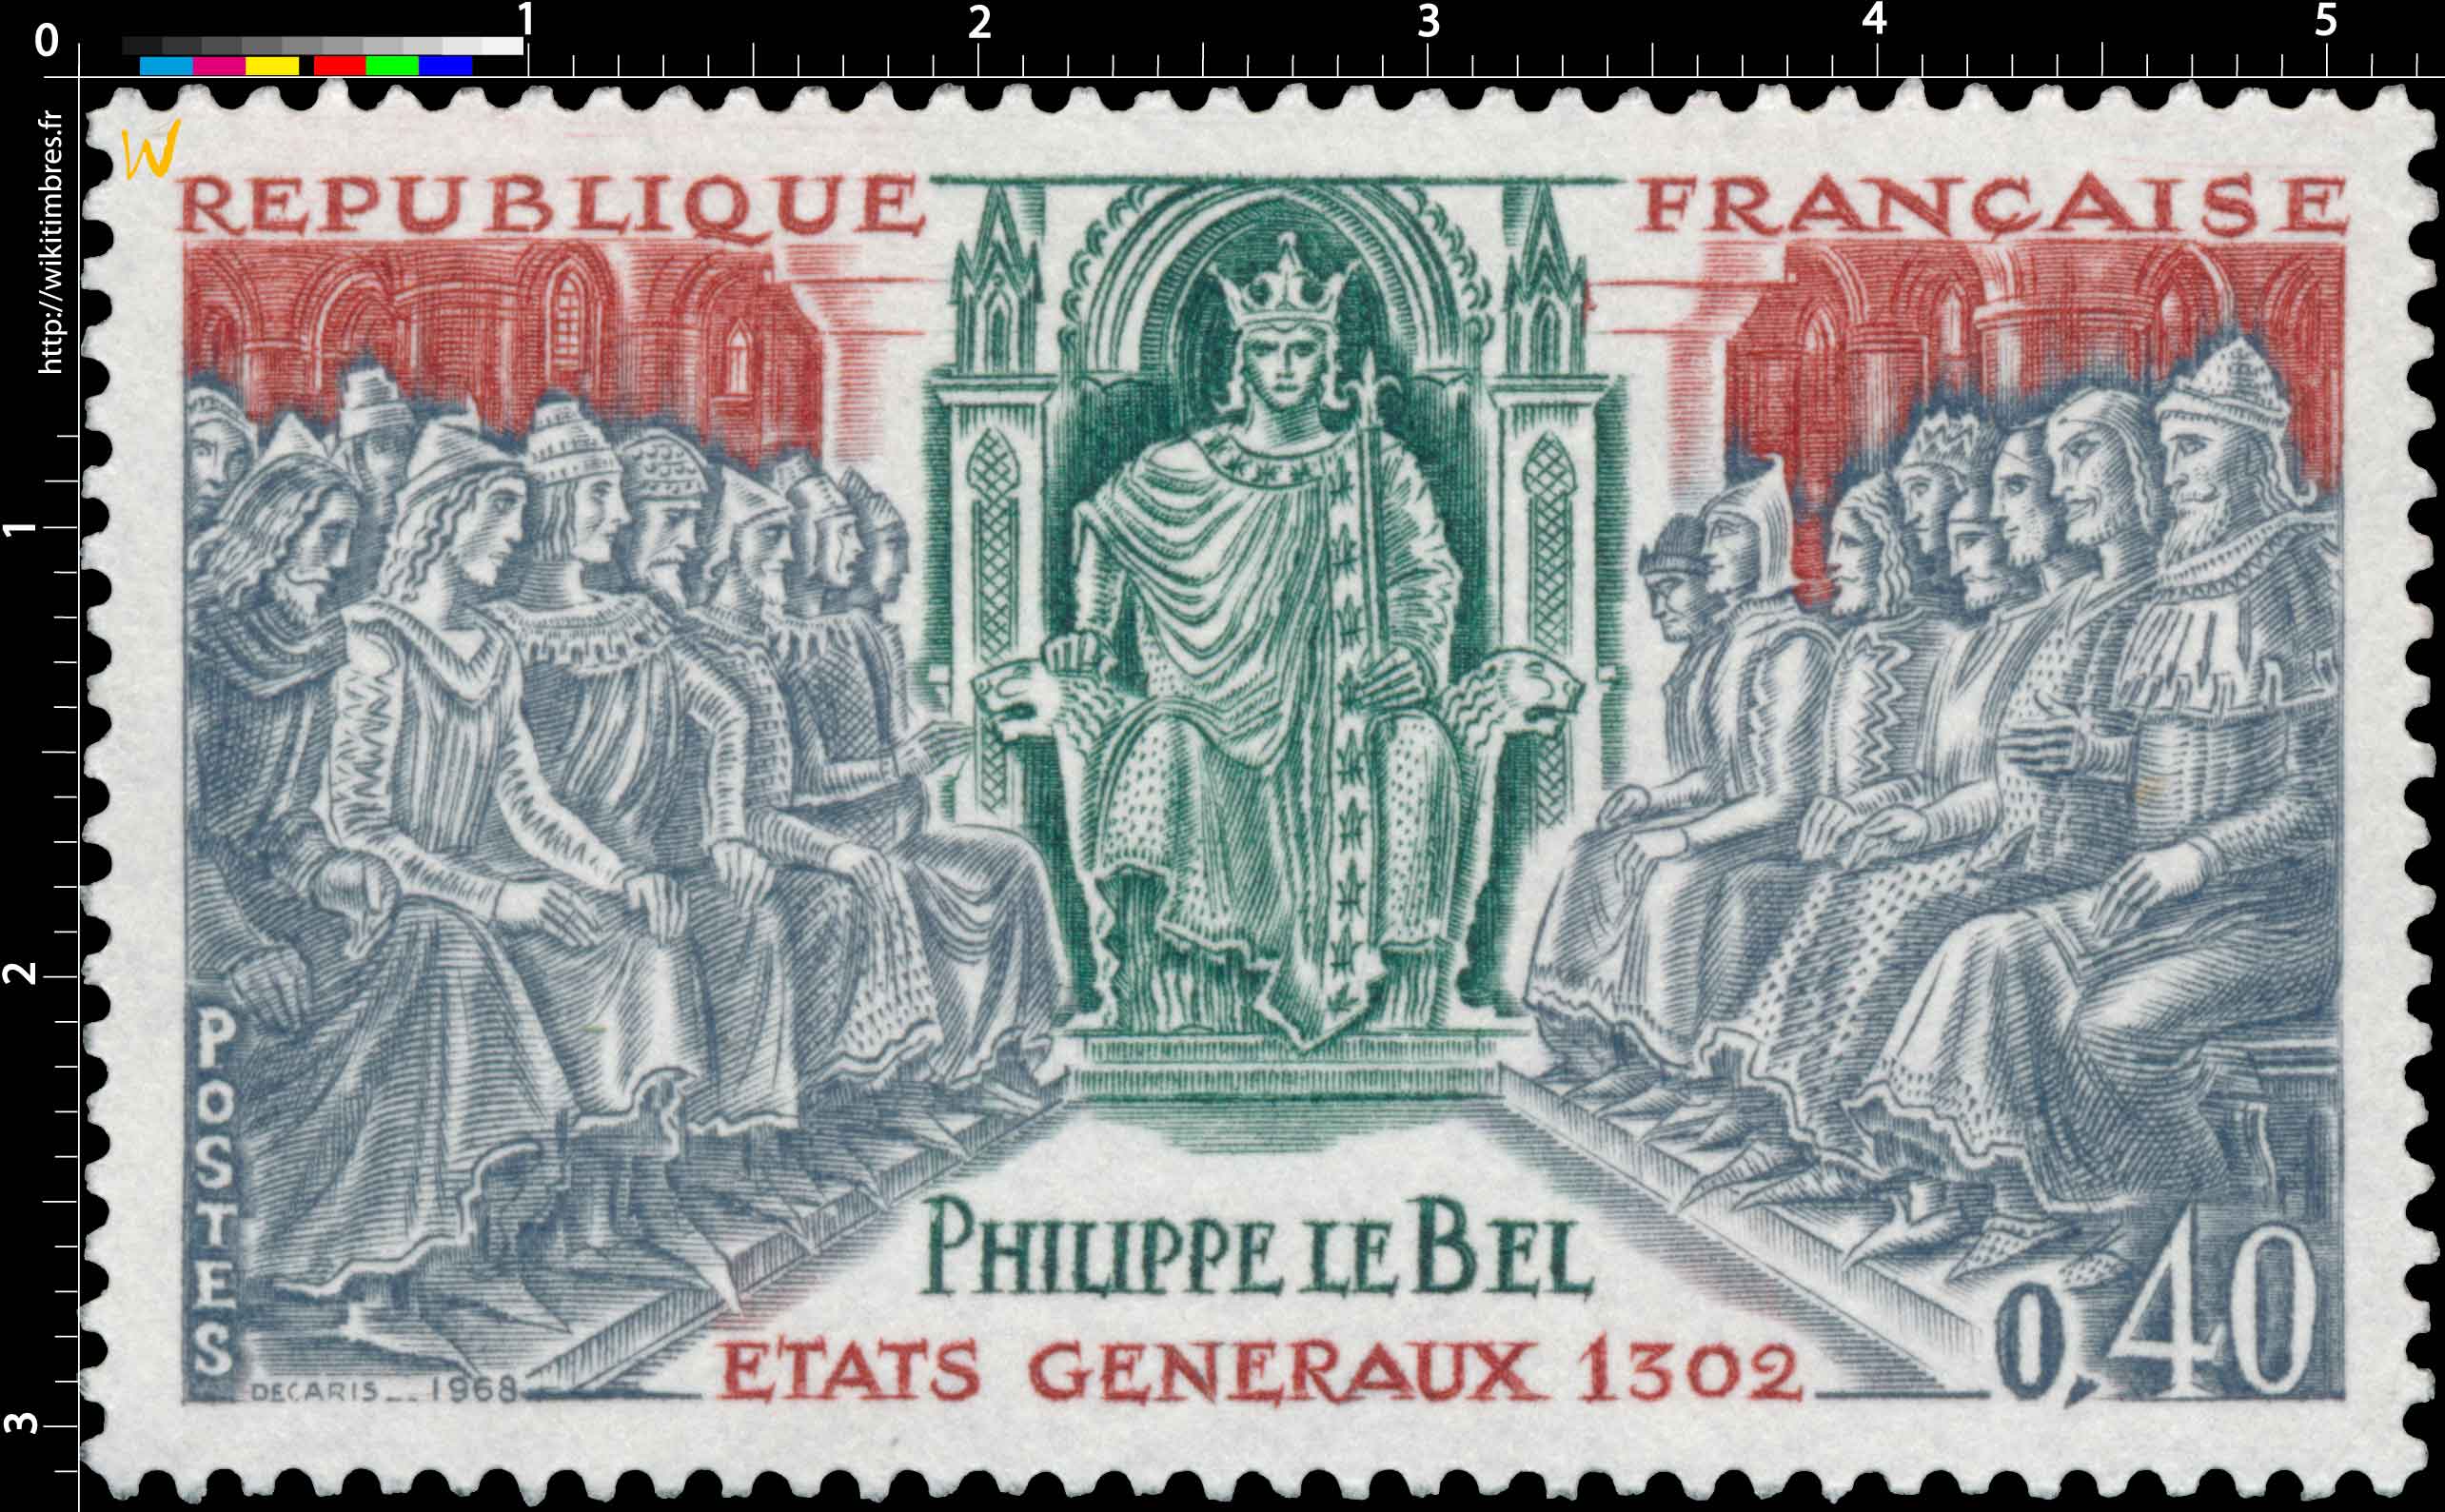 1968 PHILIPPE LE BEL ÉTAT GÉNÉRAUX 1302